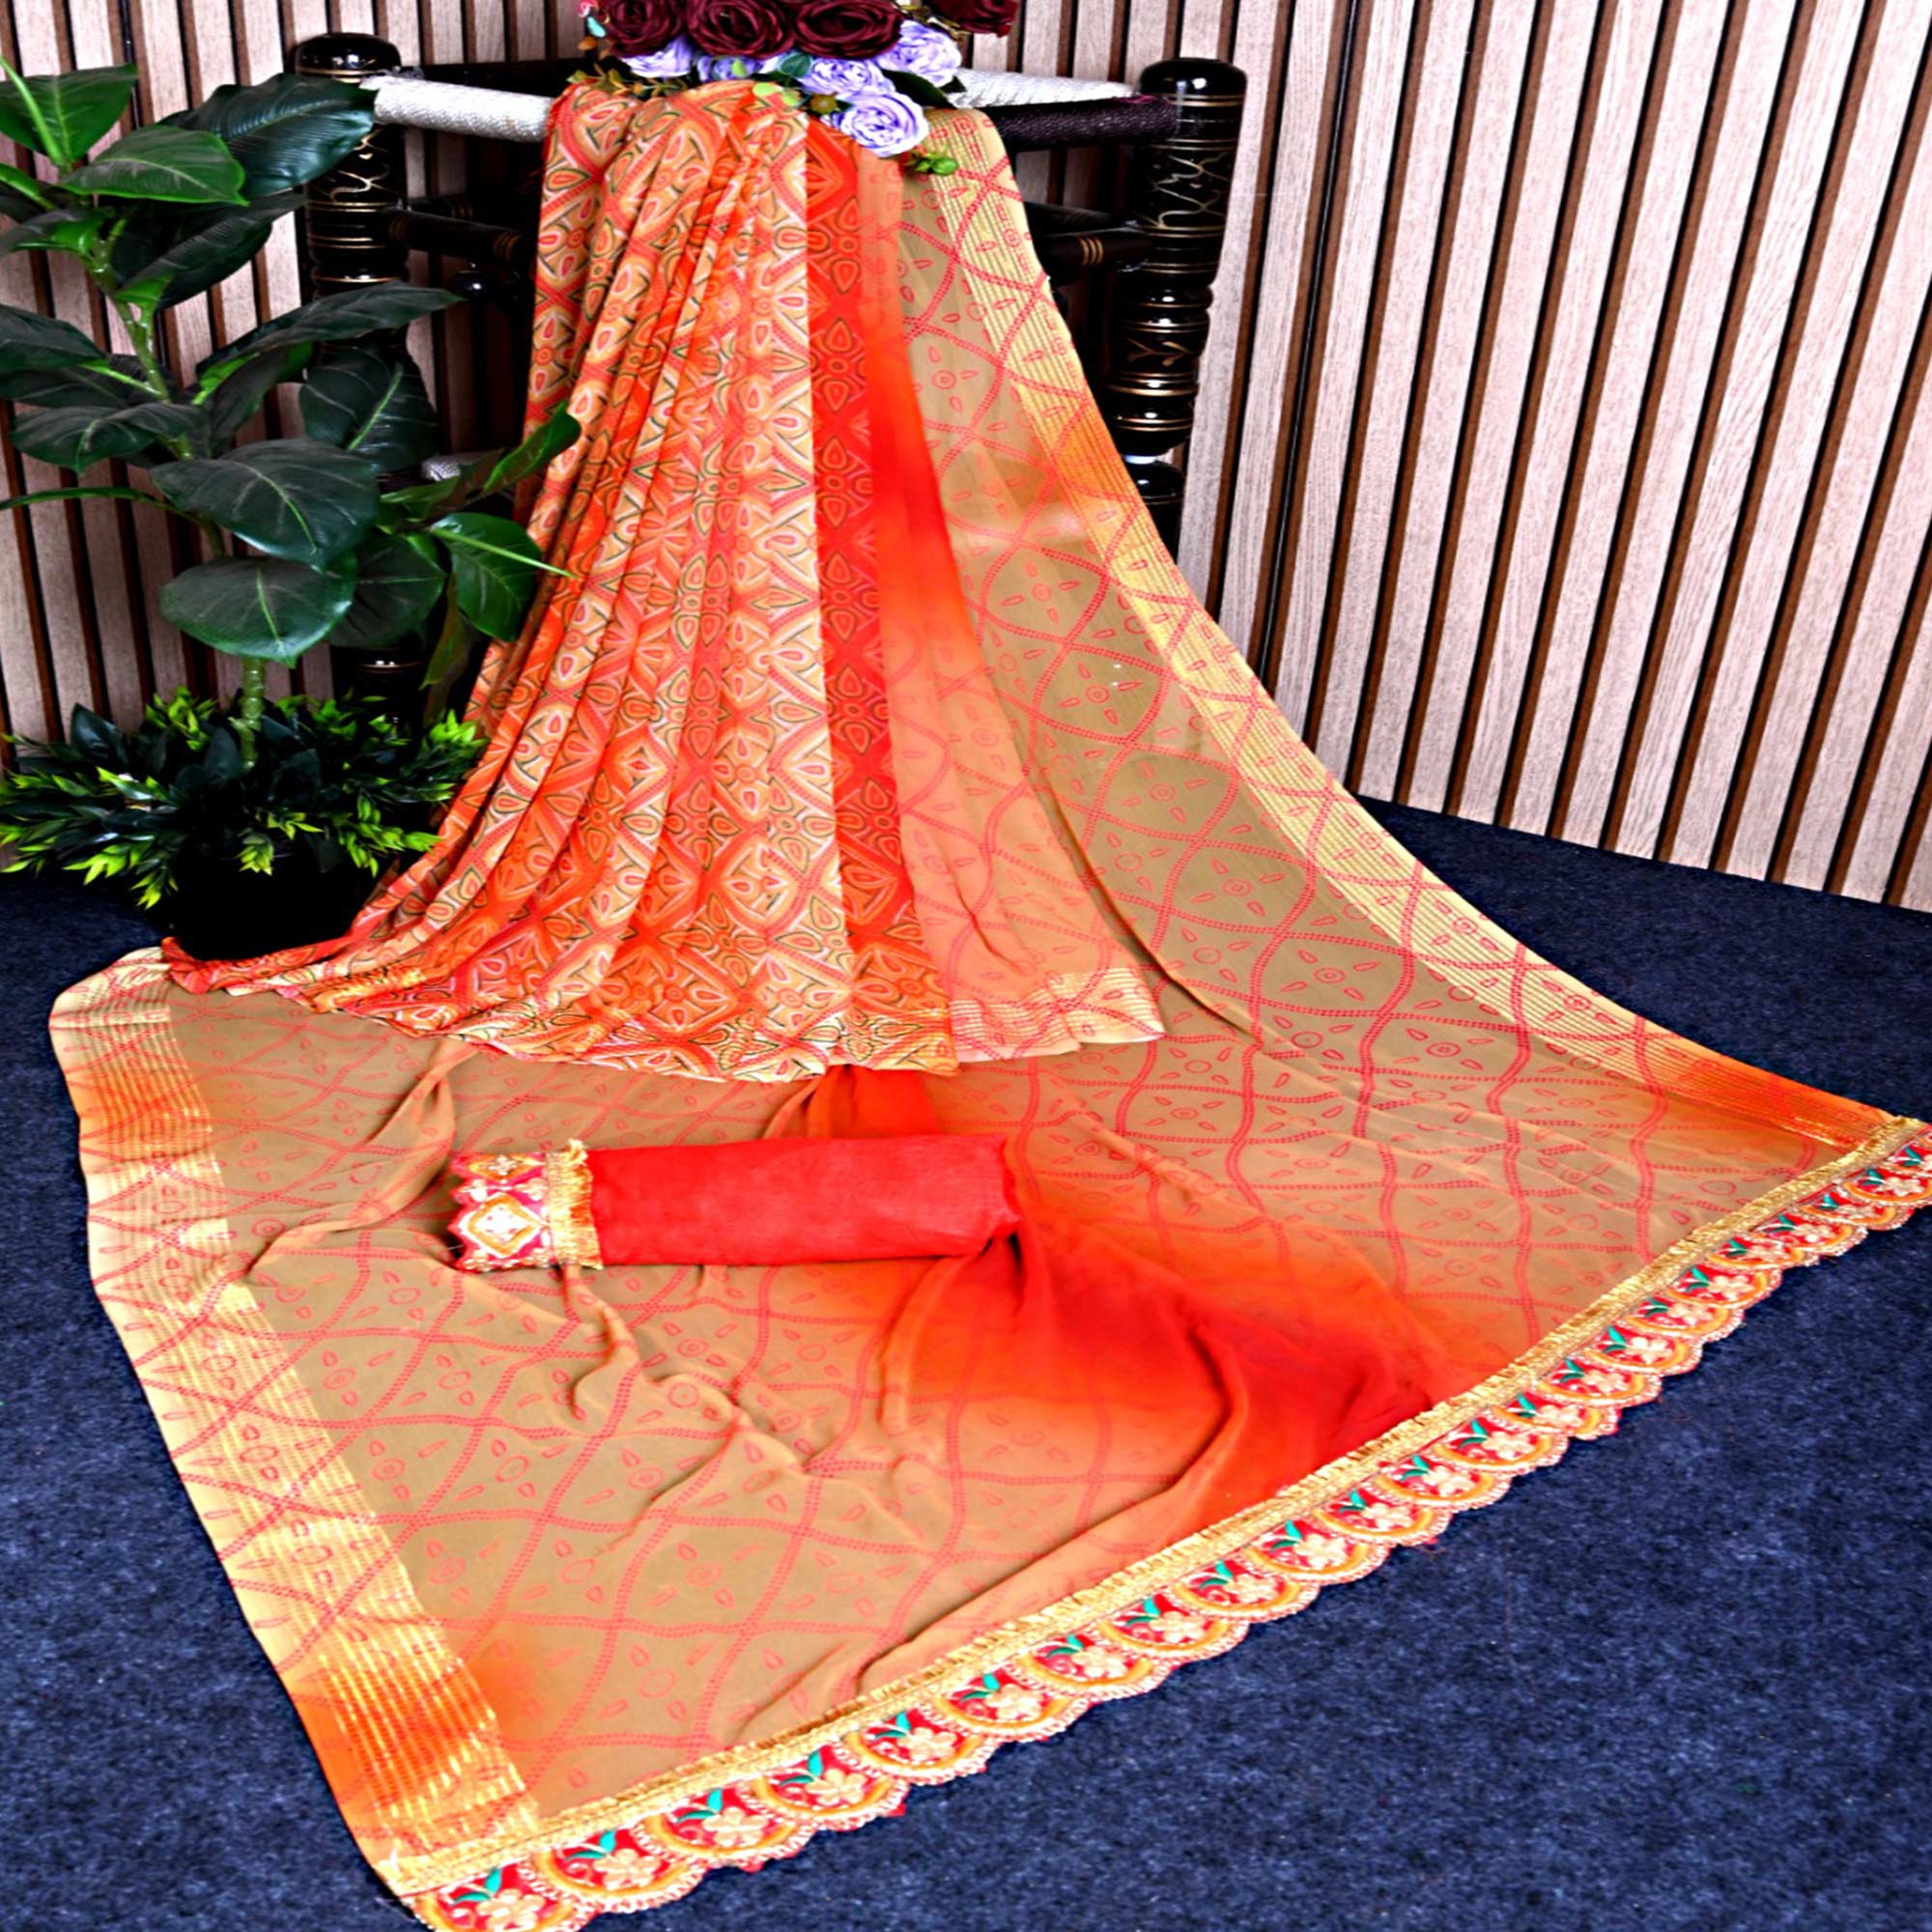 Chikoo & Orange Bandhani Printed Georgette Saree With Zari Border